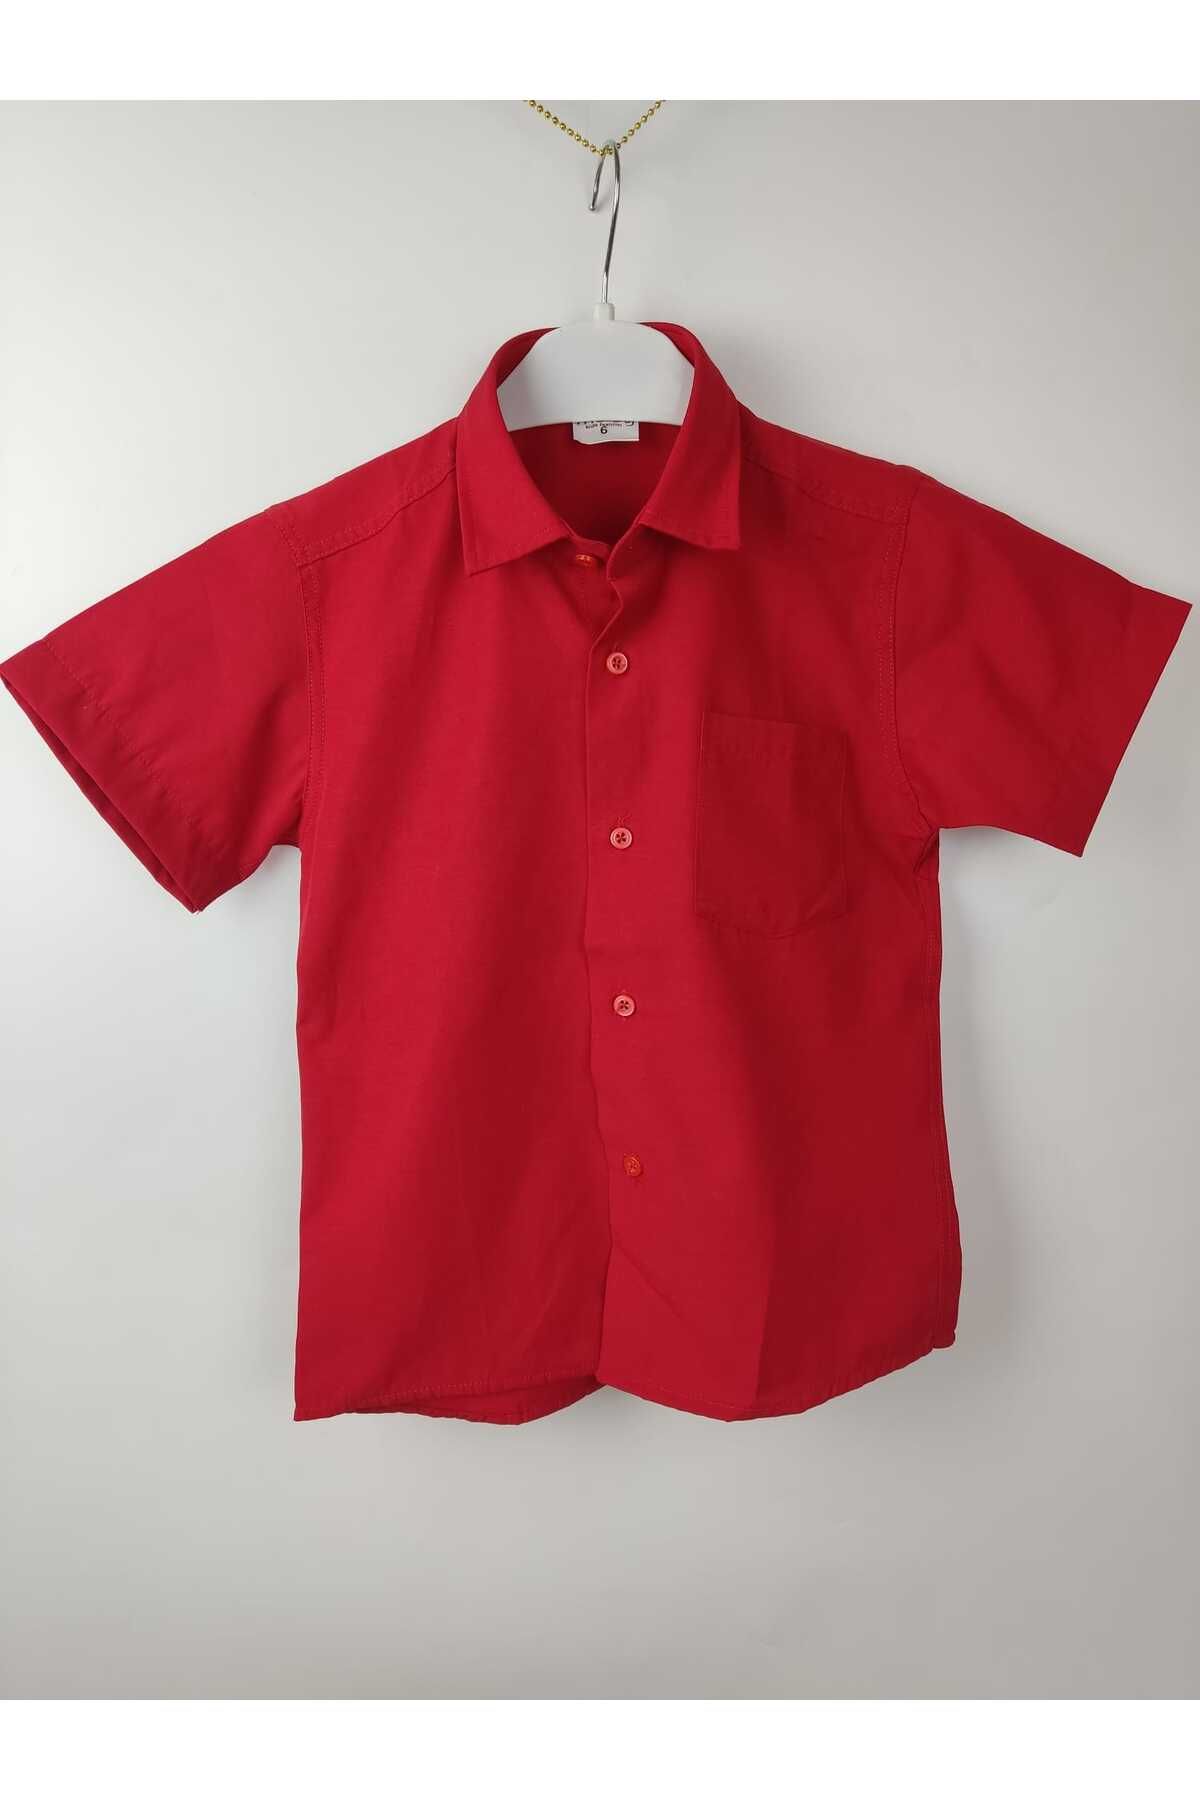 wmını Erkek Çocuk Kısa Kol Kırmızı Renk Gömlek 23 Nisan 29 Ekim 19 Mayıs Gösteri Mezuniyet